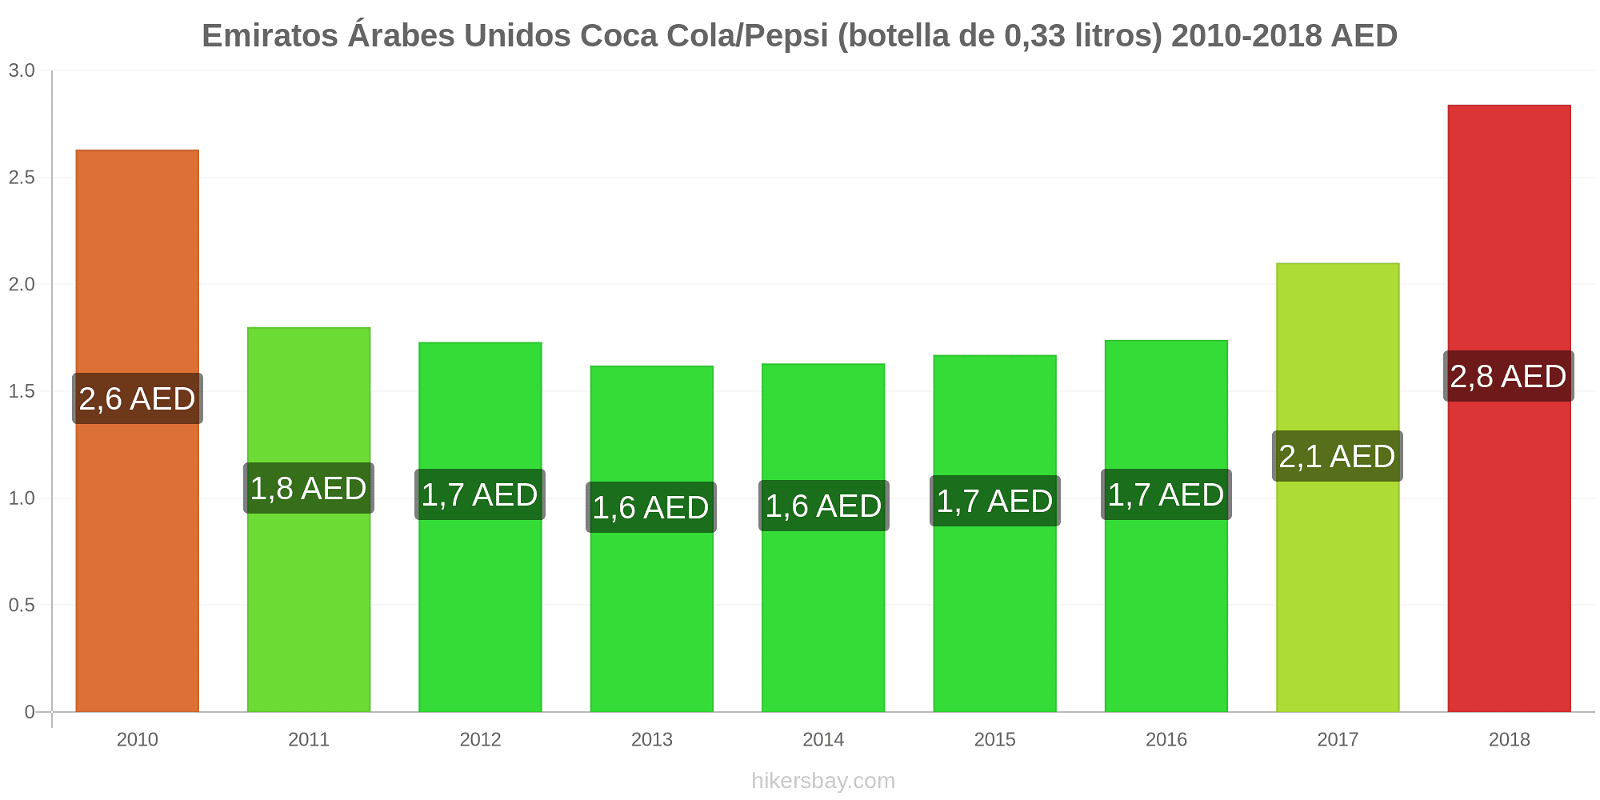 Emiratos Árabes Unidos cambios de precios Coca-Cola/Pepsi (botella de 0.33 litros) hikersbay.com